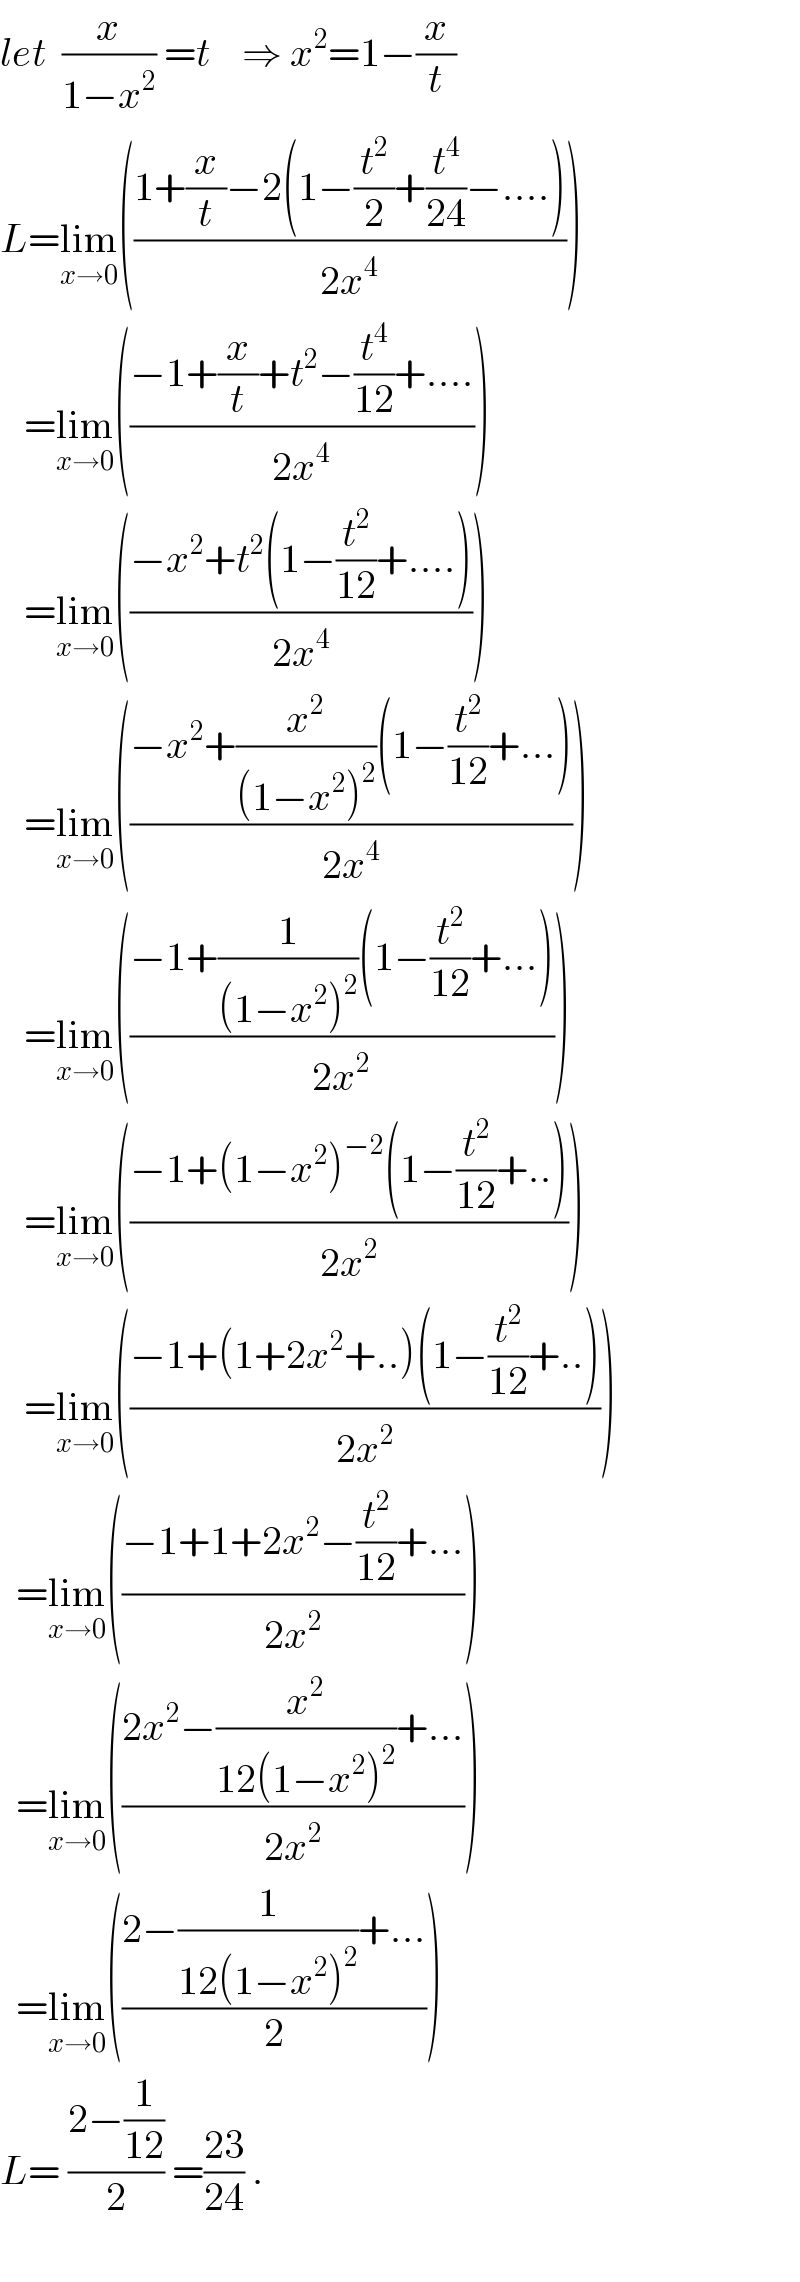 let  (x/(1−x^2 )) =t    ⇒ x^2 =1−(x/t)  L=lim_(x→0) (((1+(x/t)−2(1−(t^2 /2)+(t^4 /(24))−....))/(2x^4 )))     =lim_(x→0) (((−1+(x/t)+t^2 −(t^4 /(12))+....)/(2x^4 )))     =lim_(x→0) (((−x^2 +t^2 (1−(t^2 /(12))+....))/(2x^4 )))     =lim_(x→0) (((−x^2 +(x^2 /((1−x^2 )^2 ))(1−(t^2 /(12))+...))/(2x^4 )))     =lim_(x→0) (((−1+(1/((1−x^2 )^2 ))(1−(t^2 /(12))+...))/(2x^2 )))     =lim_(x→0) (((−1+(1−x^2 )^(−2) (1−(t^2 /(12))+..))/(2x^2 )))     =lim_(x→0) (((−1+(1+2x^2 +..)(1−(t^2 /(12))+..))/(2x^2 )))    =lim_(x→0) (((−1+1+2x^2 −(t^2 /(12))+...)/(2x^2 )))    =lim_(x→0) (((2x^2 −(x^2 /(12(1−x^2 )^2 ))+...)/(2x^2 )))    =lim_(x→0) (((2−(1/(12(1−x^2 )^2 ))+...)/2))  L= ((2−(1/(12)))/2) =((23)/(24)) .    